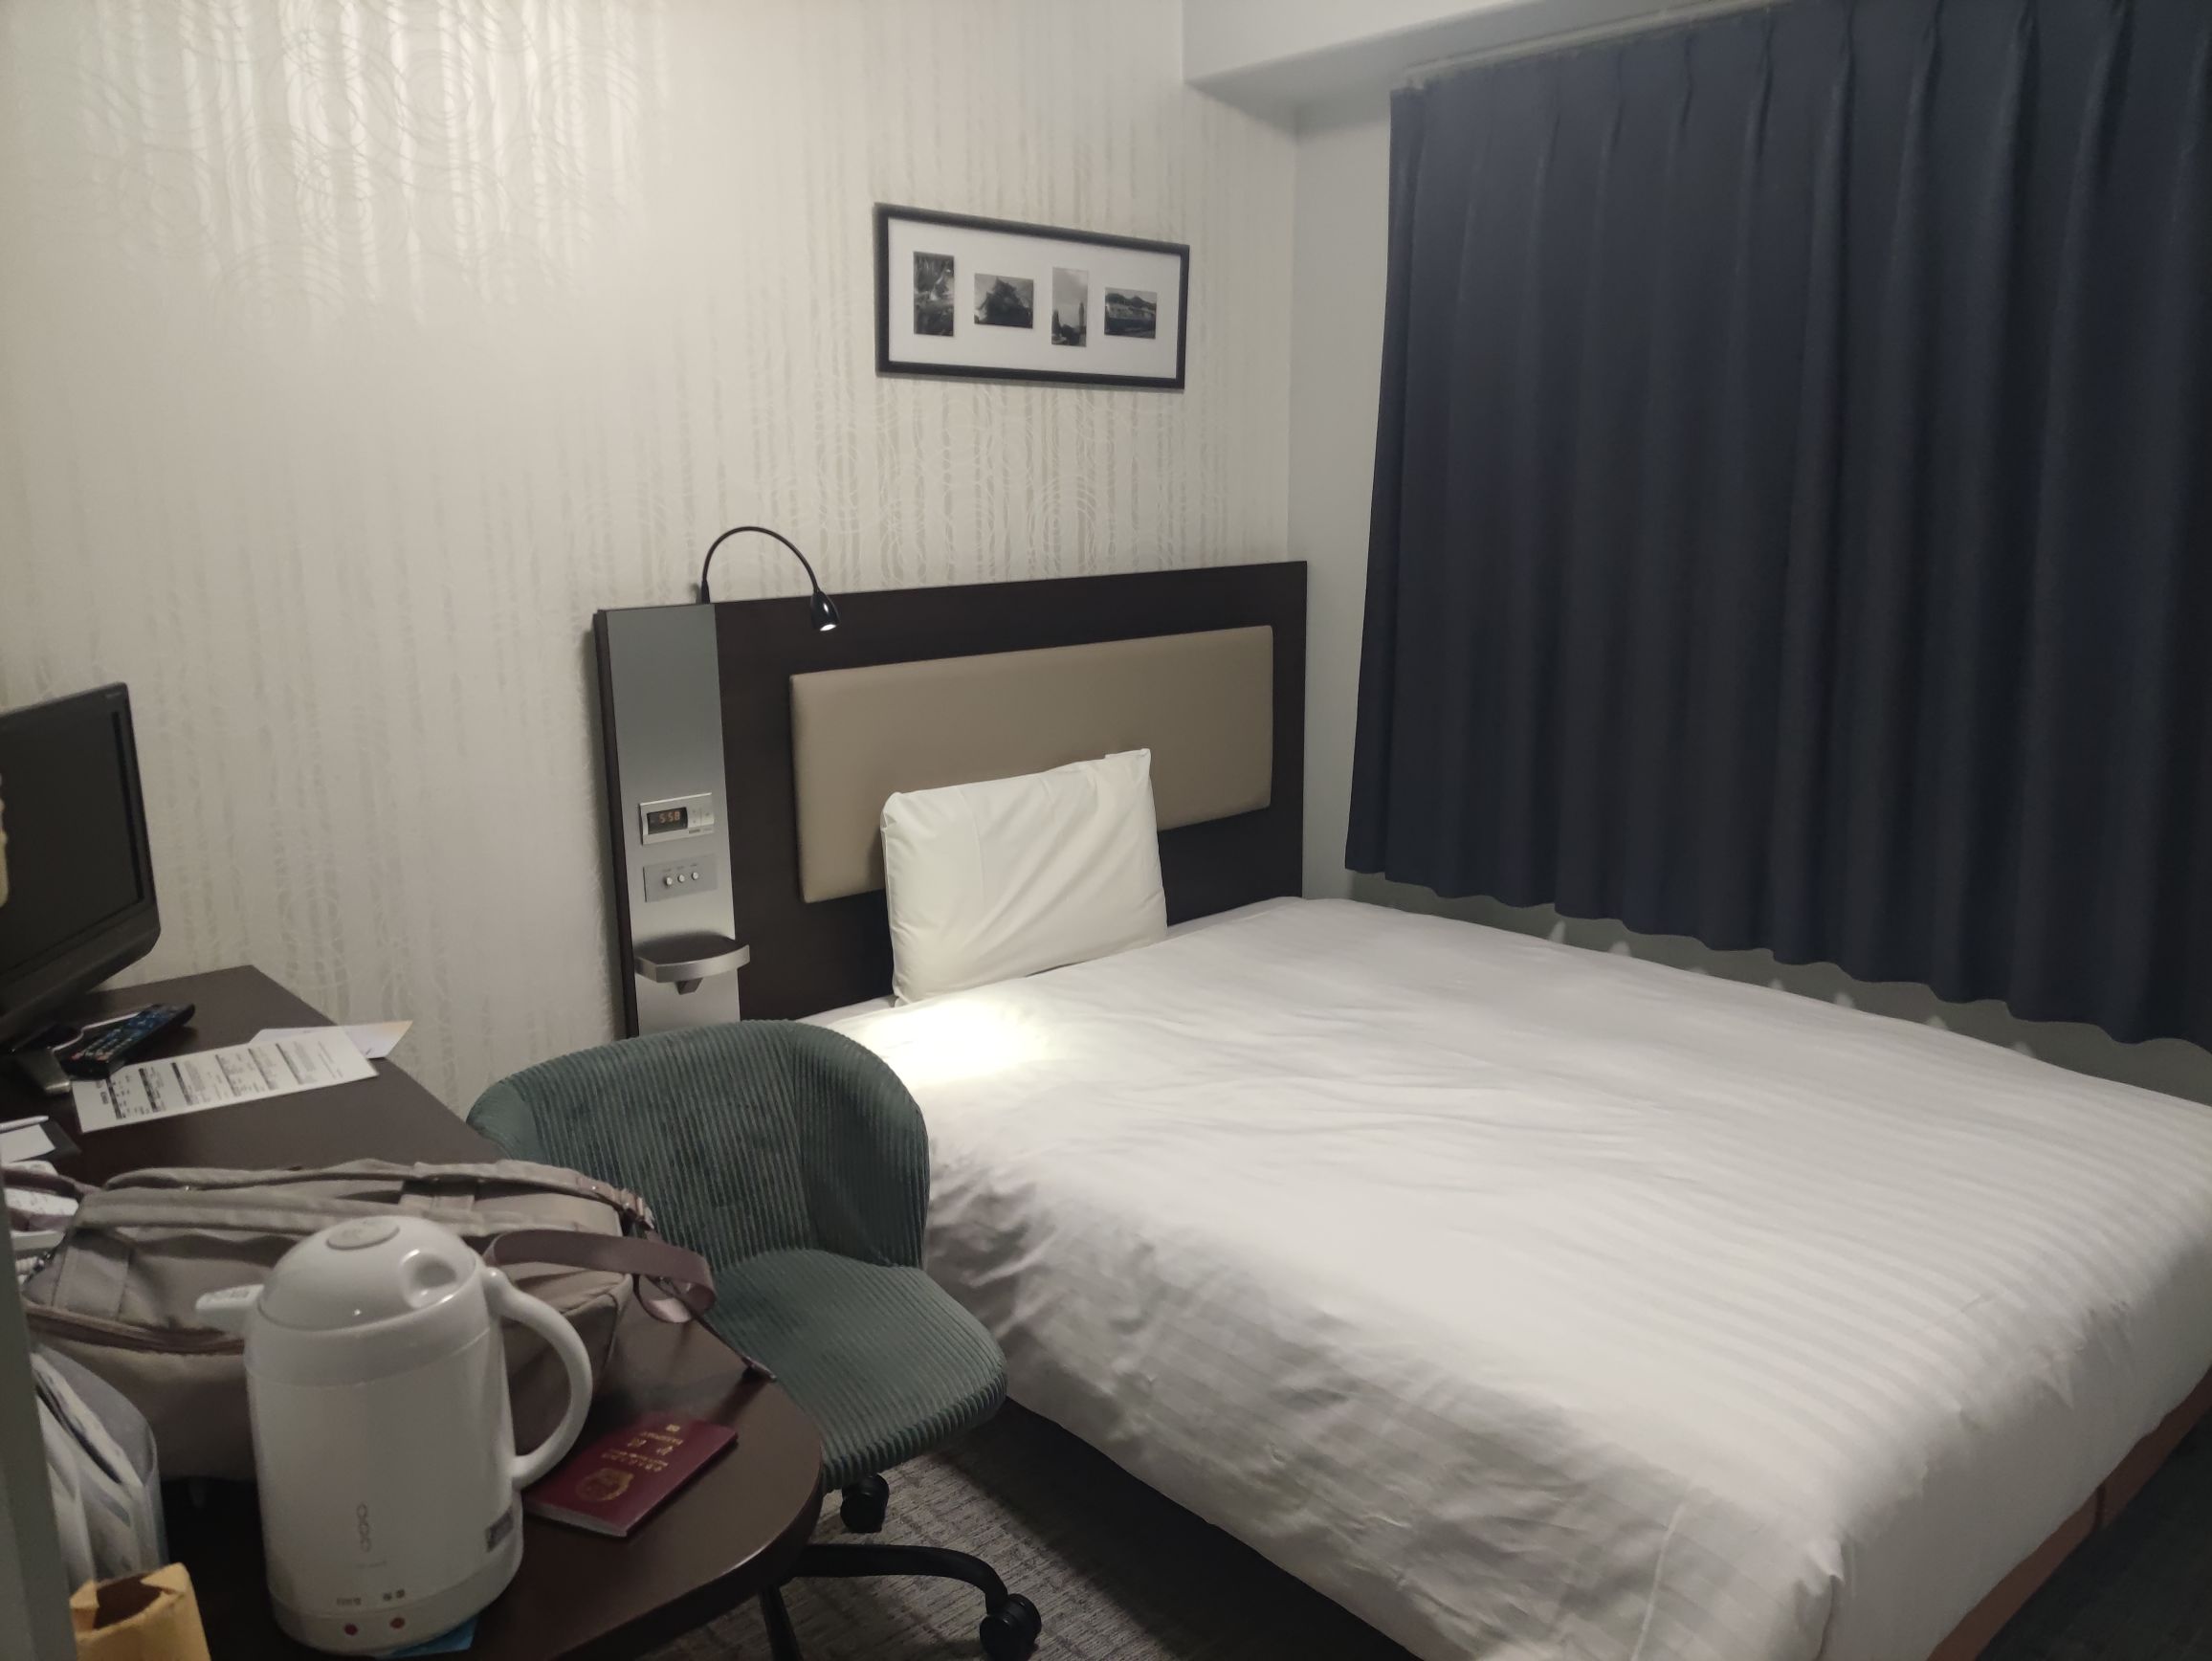 日本的酒店真是把空间利用到了极致，虽然小，但是什么设备都有 房间隔音很好，床铺睡着特别舒服，空调给力